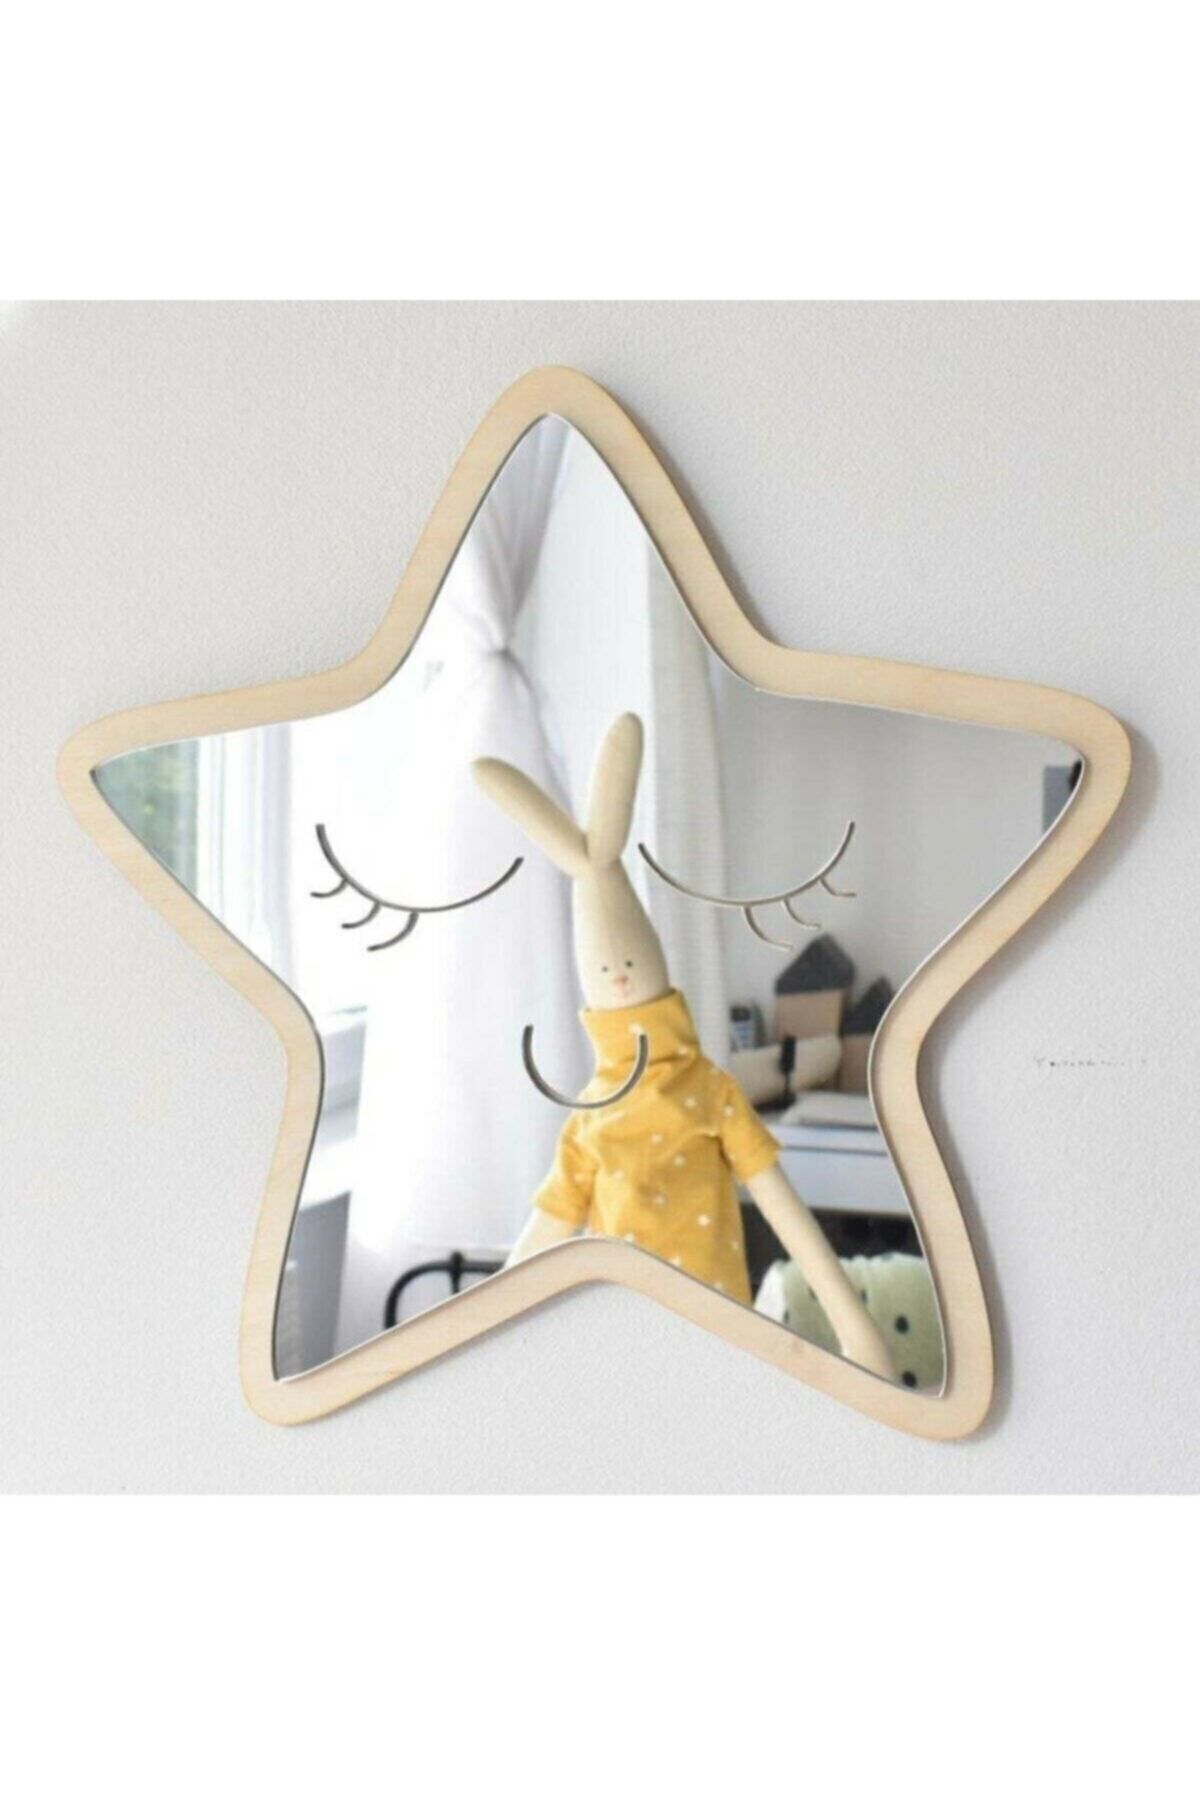 GİZEM SHOP Yıldız Figürlü Çocuk Odası Dekoratif Pleksi Ayna Gülen Yıldız